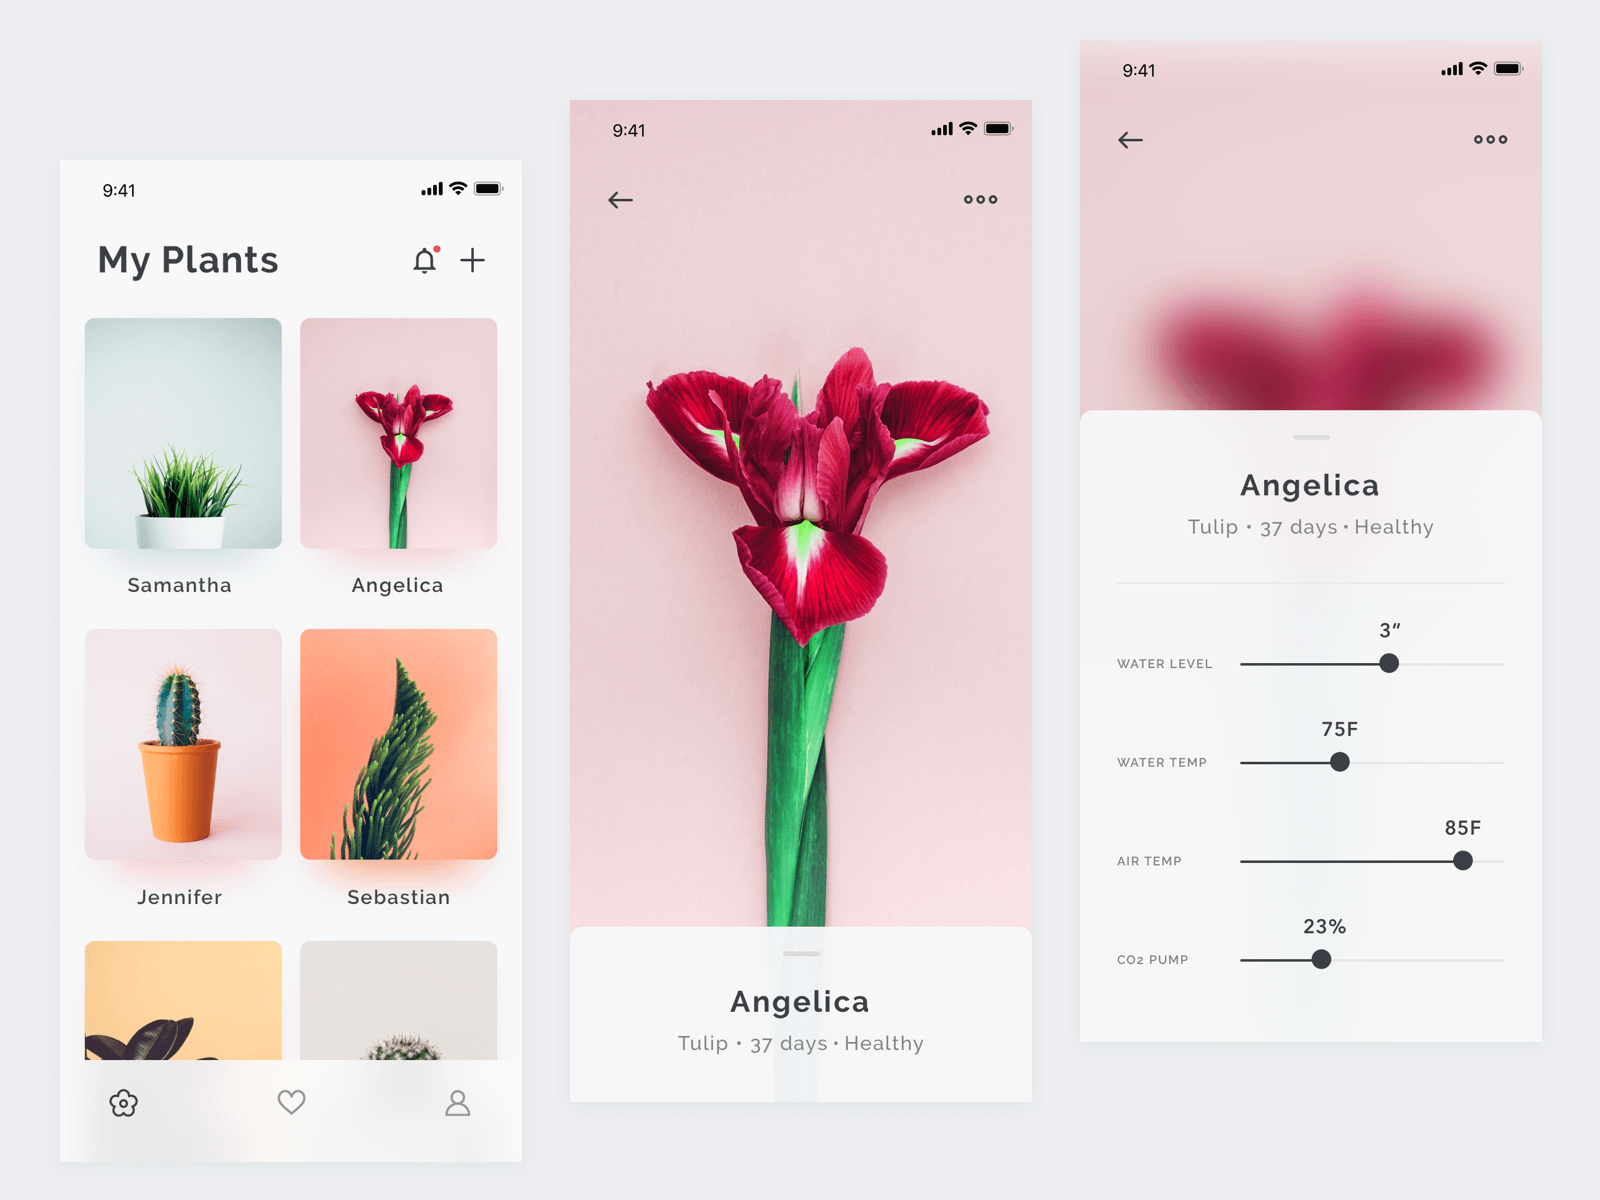 Plants App Concept